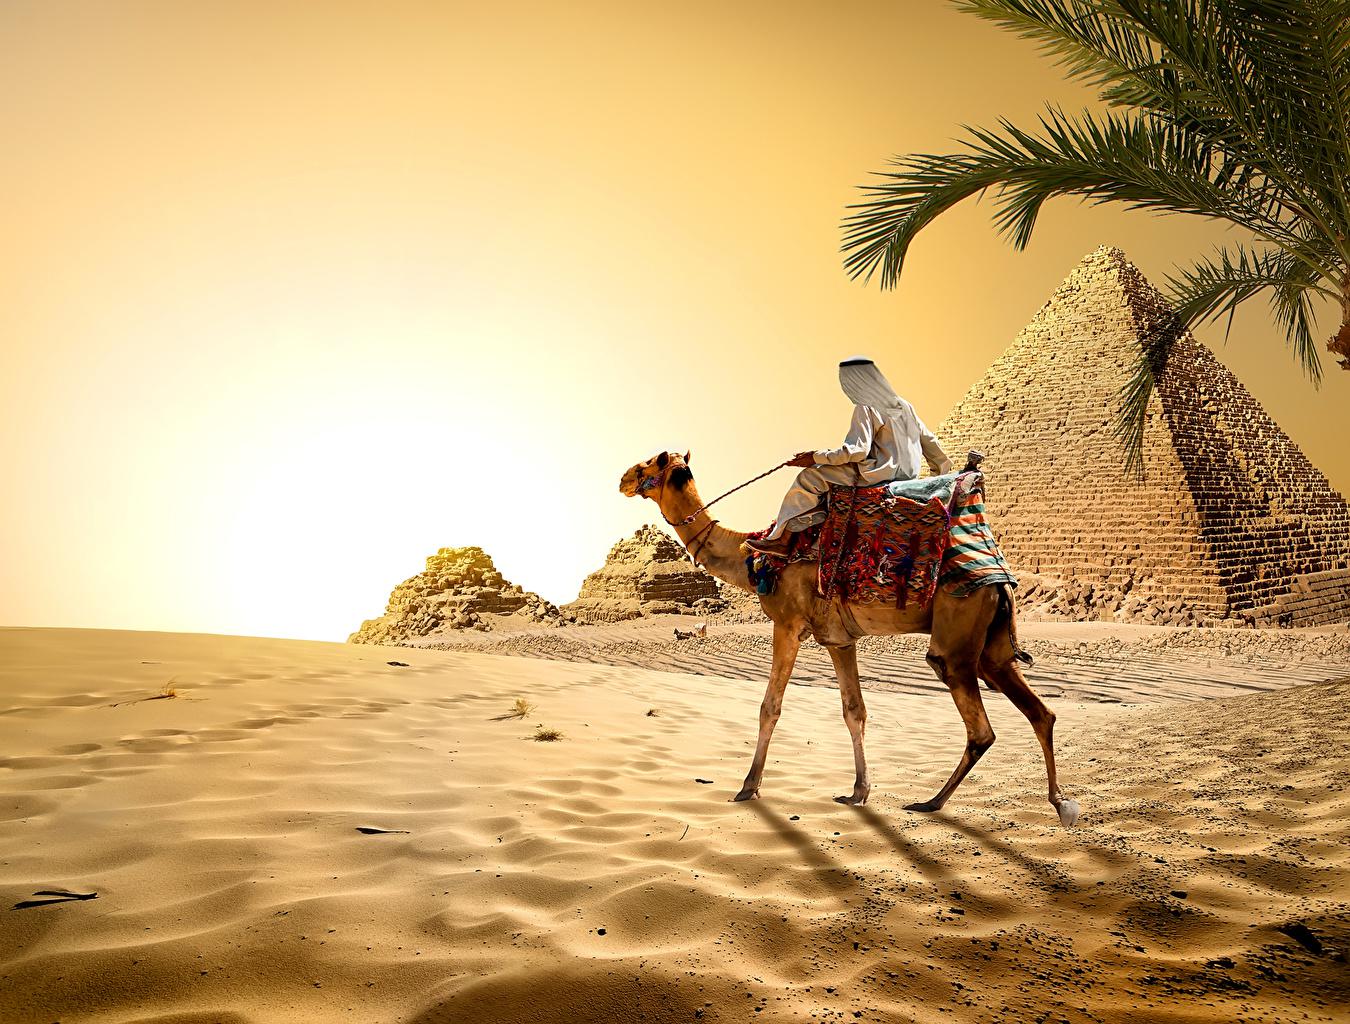 Arabian desert in Egypt, 1350x1024 p